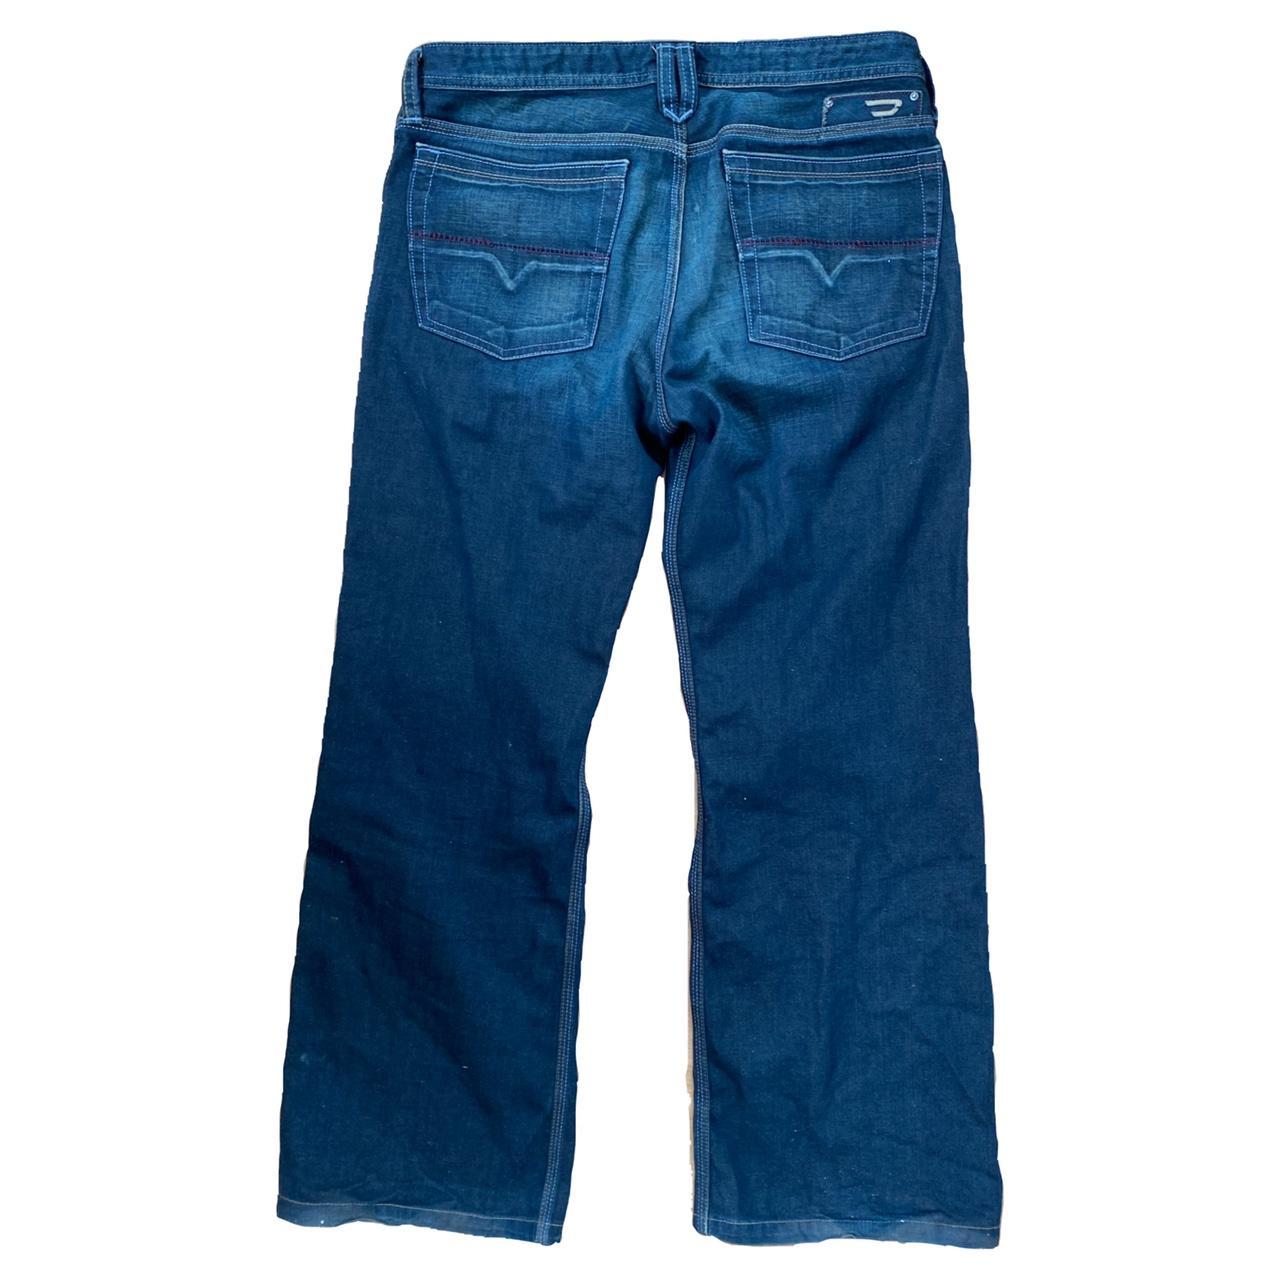 Diesel jeans baggy bootleg fit in dark blue denim... - Depop